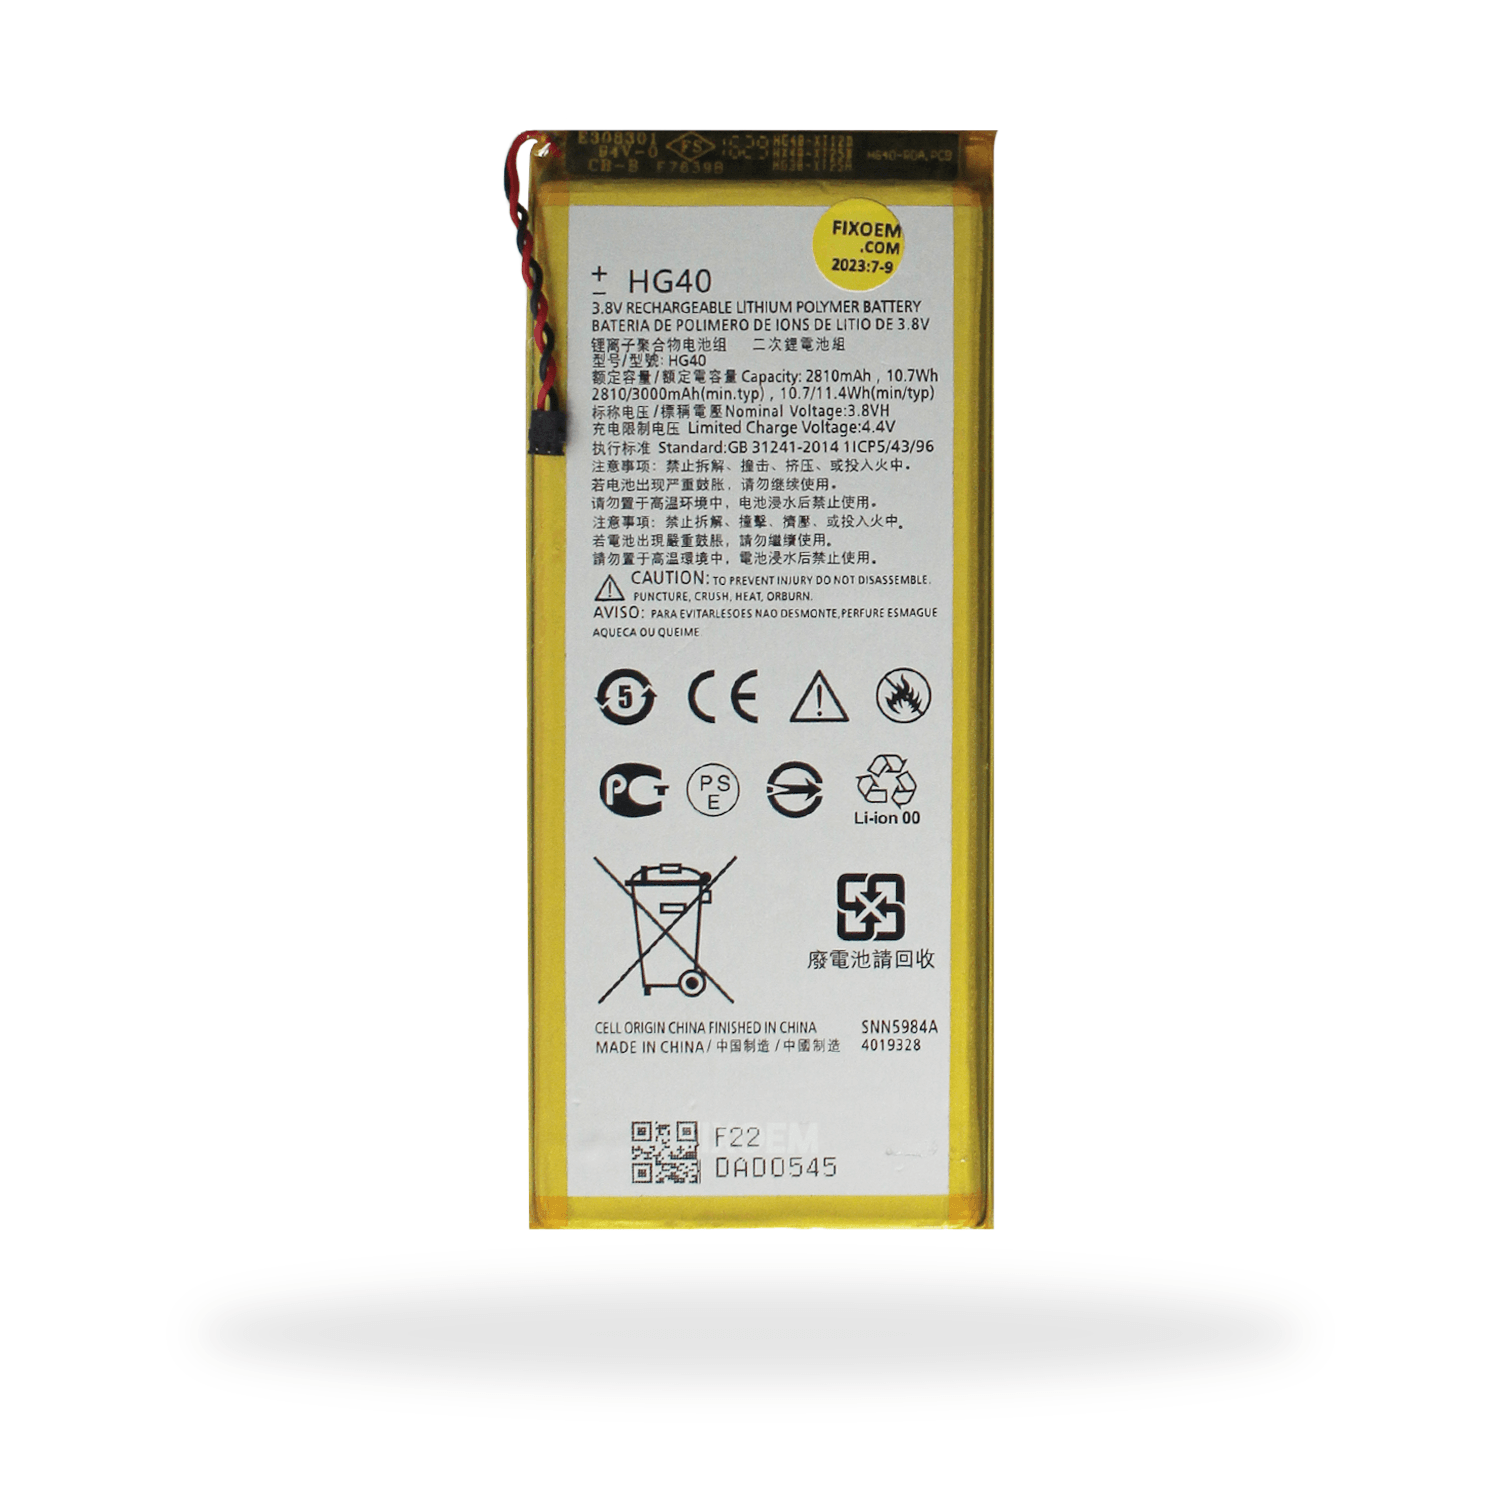 Bateria Moto G5 Plus Xt-1687 Hg40 a solo $ 120.00 Refaccion y puestos celulares, refurbish y microelectronica.- FixOEM